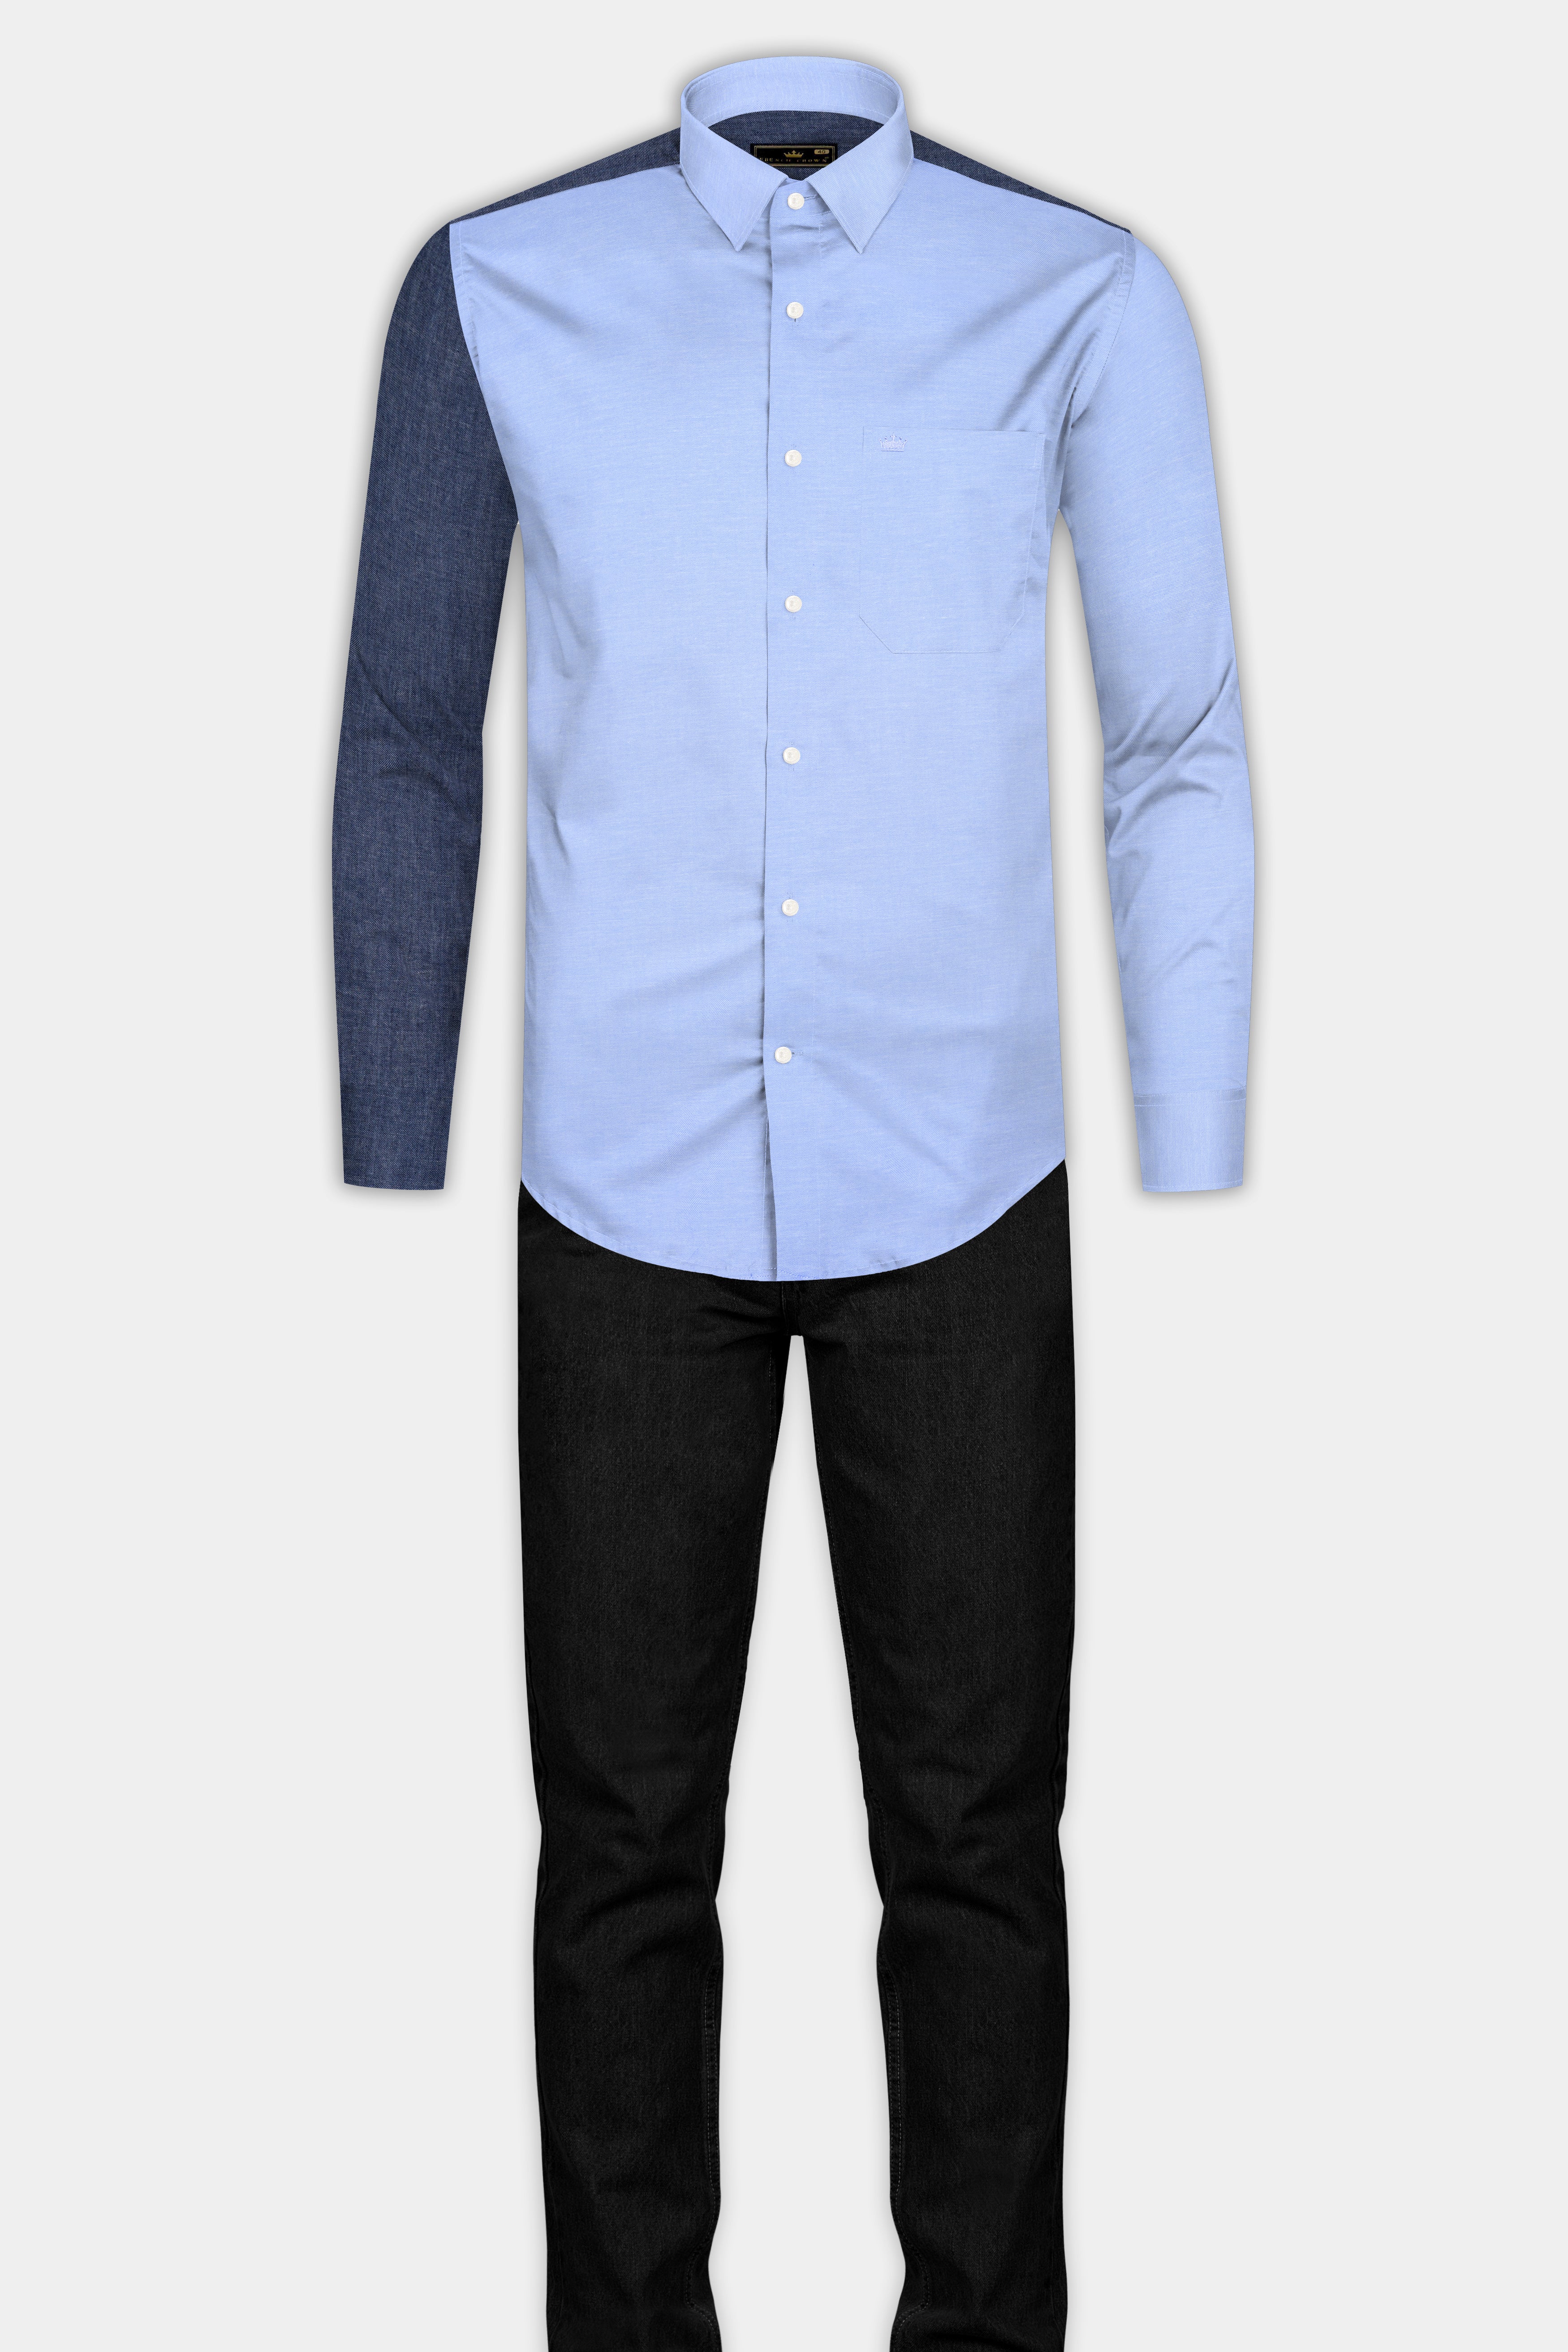 Tealish Blue and Gray Royal Oxford Shirt